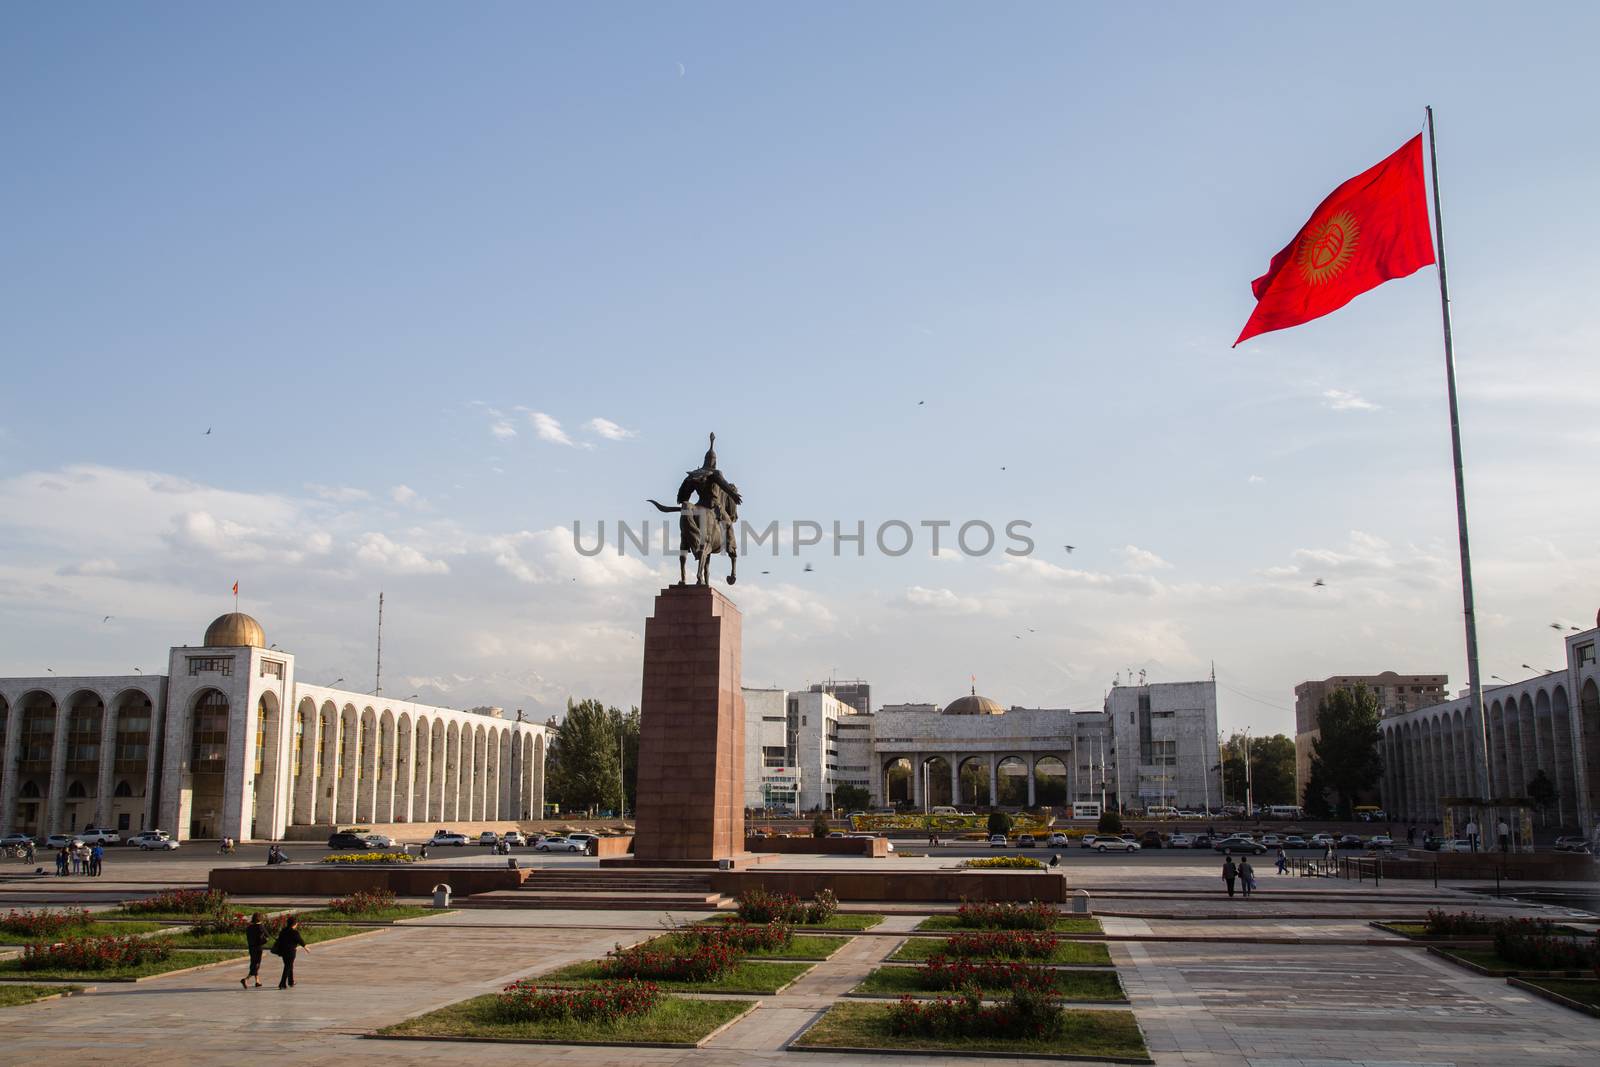 Ala-Too Square in Bishkek, Kyrgyzstan by oliverfoerstner